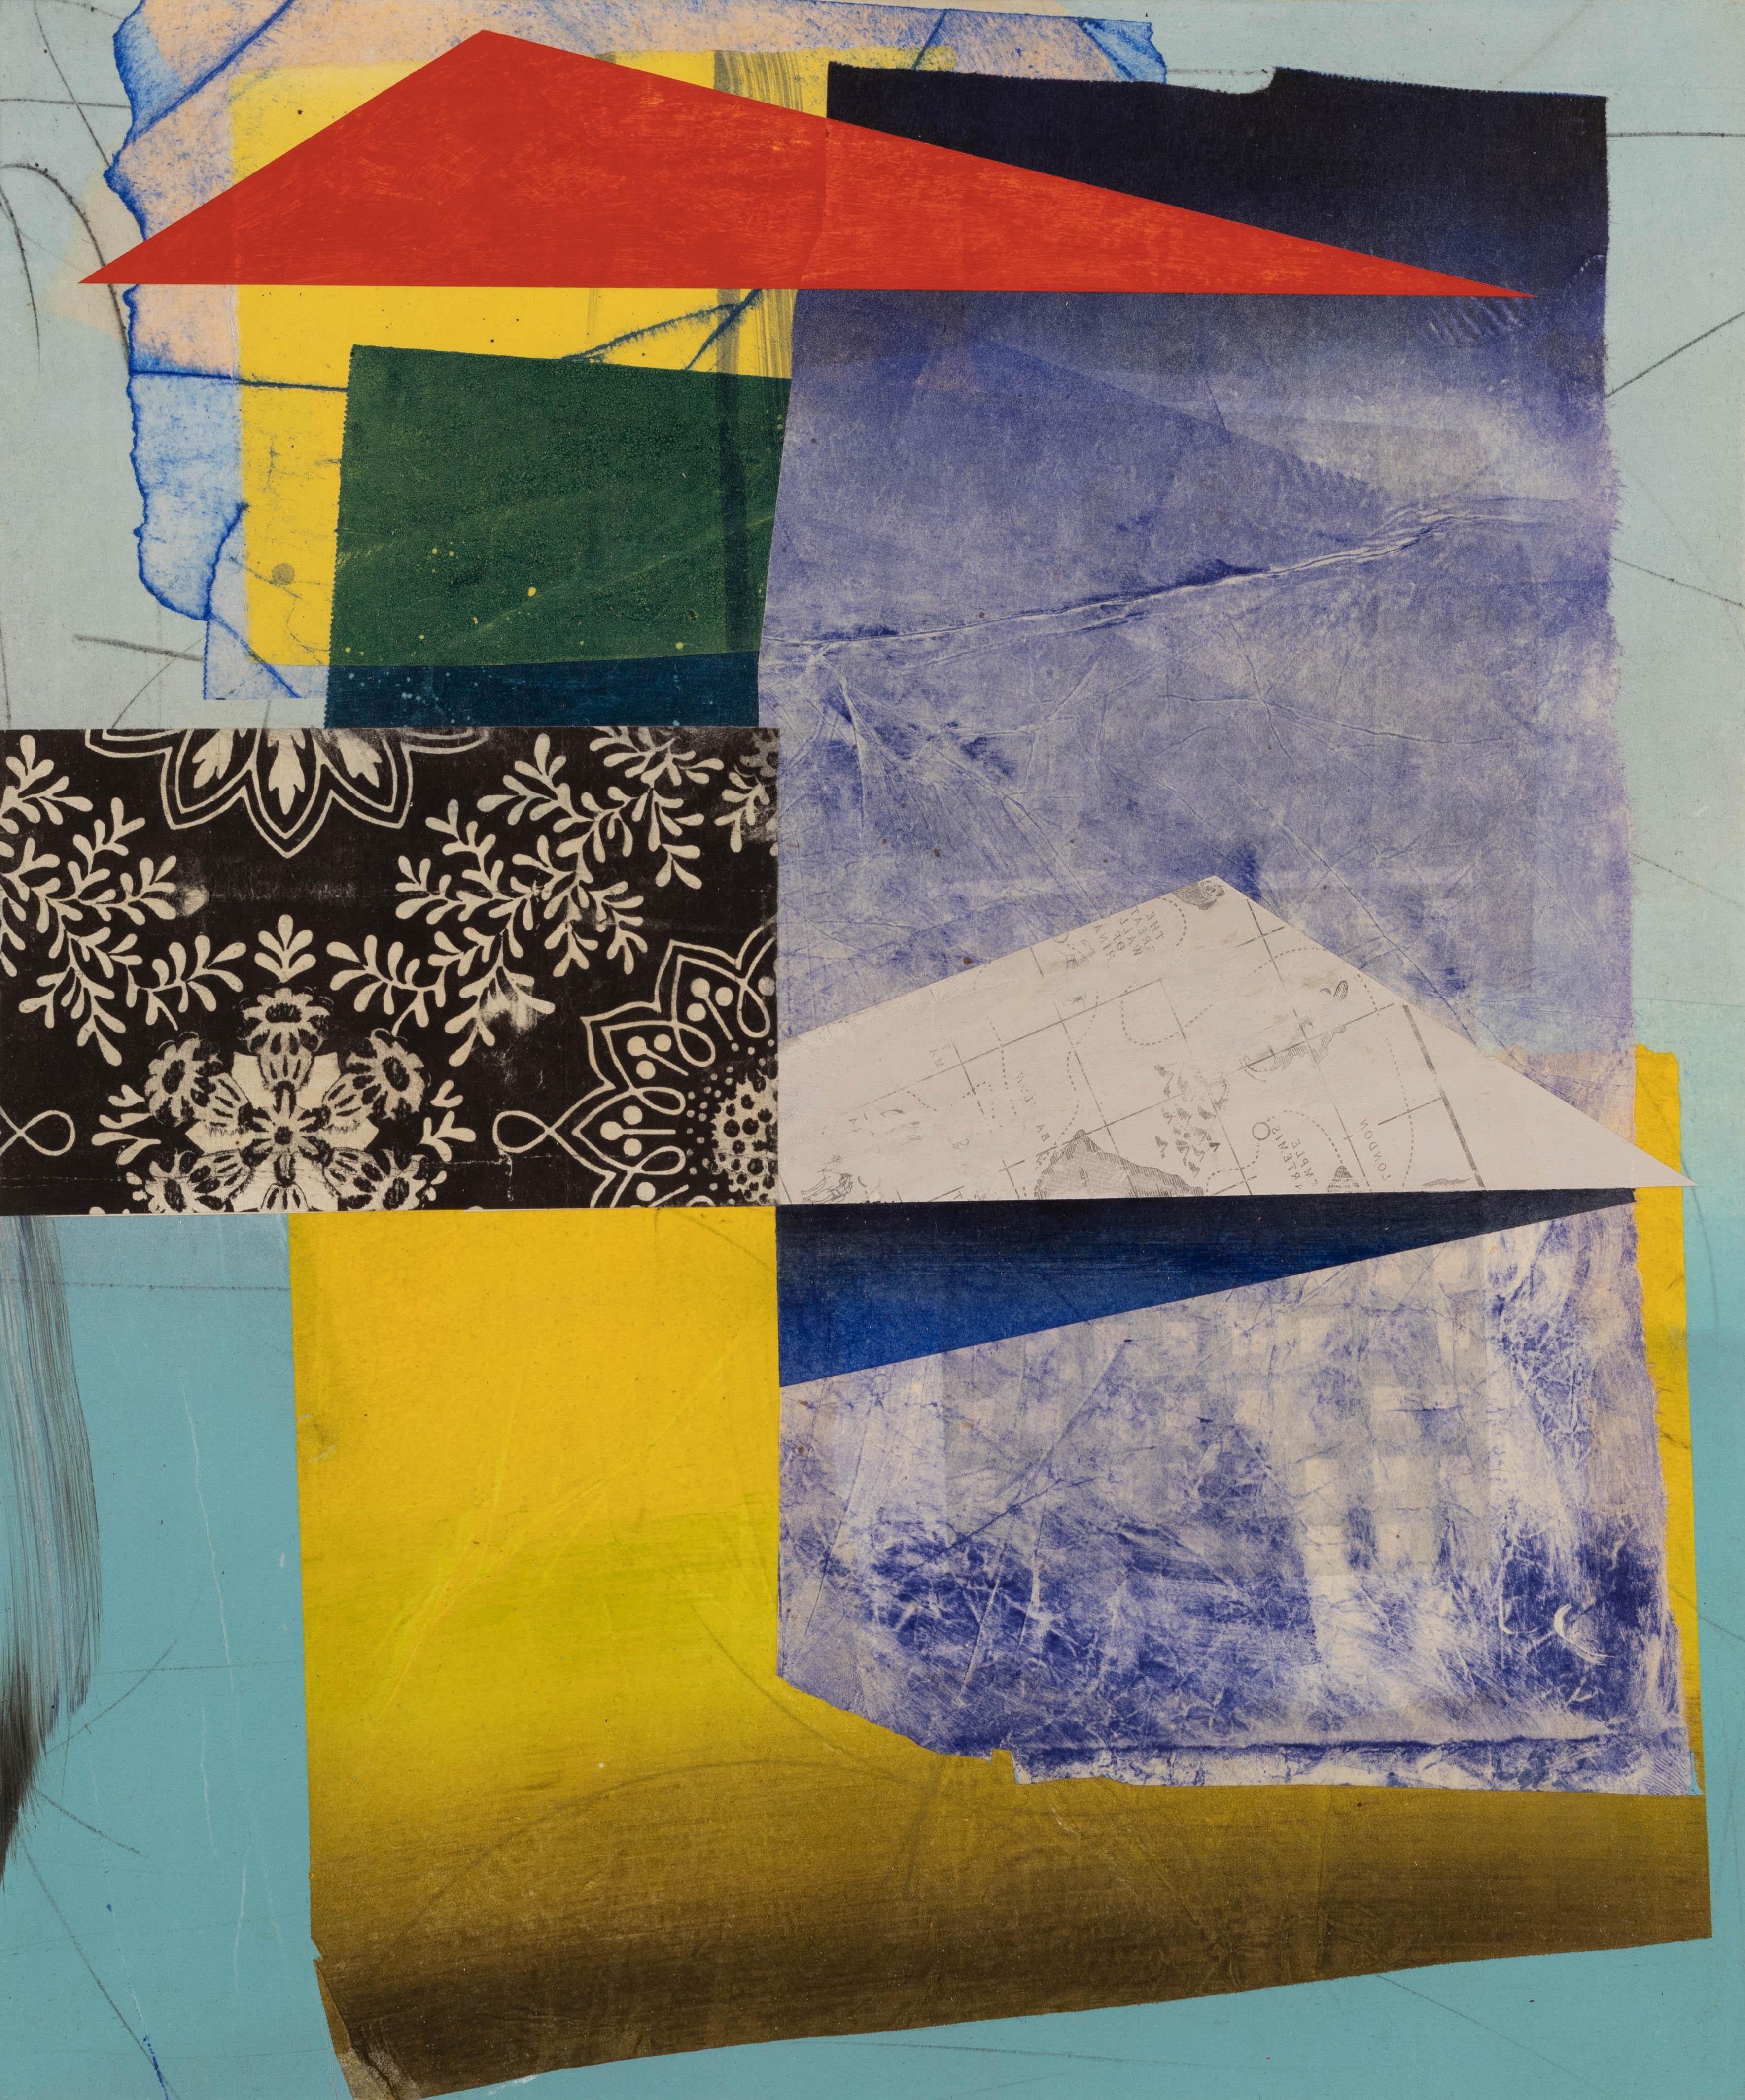 Abstract Painting David Collins - The Traveler, bleu cobalt, jaune, noir, blanc, rouge Formes géométriques abstraites